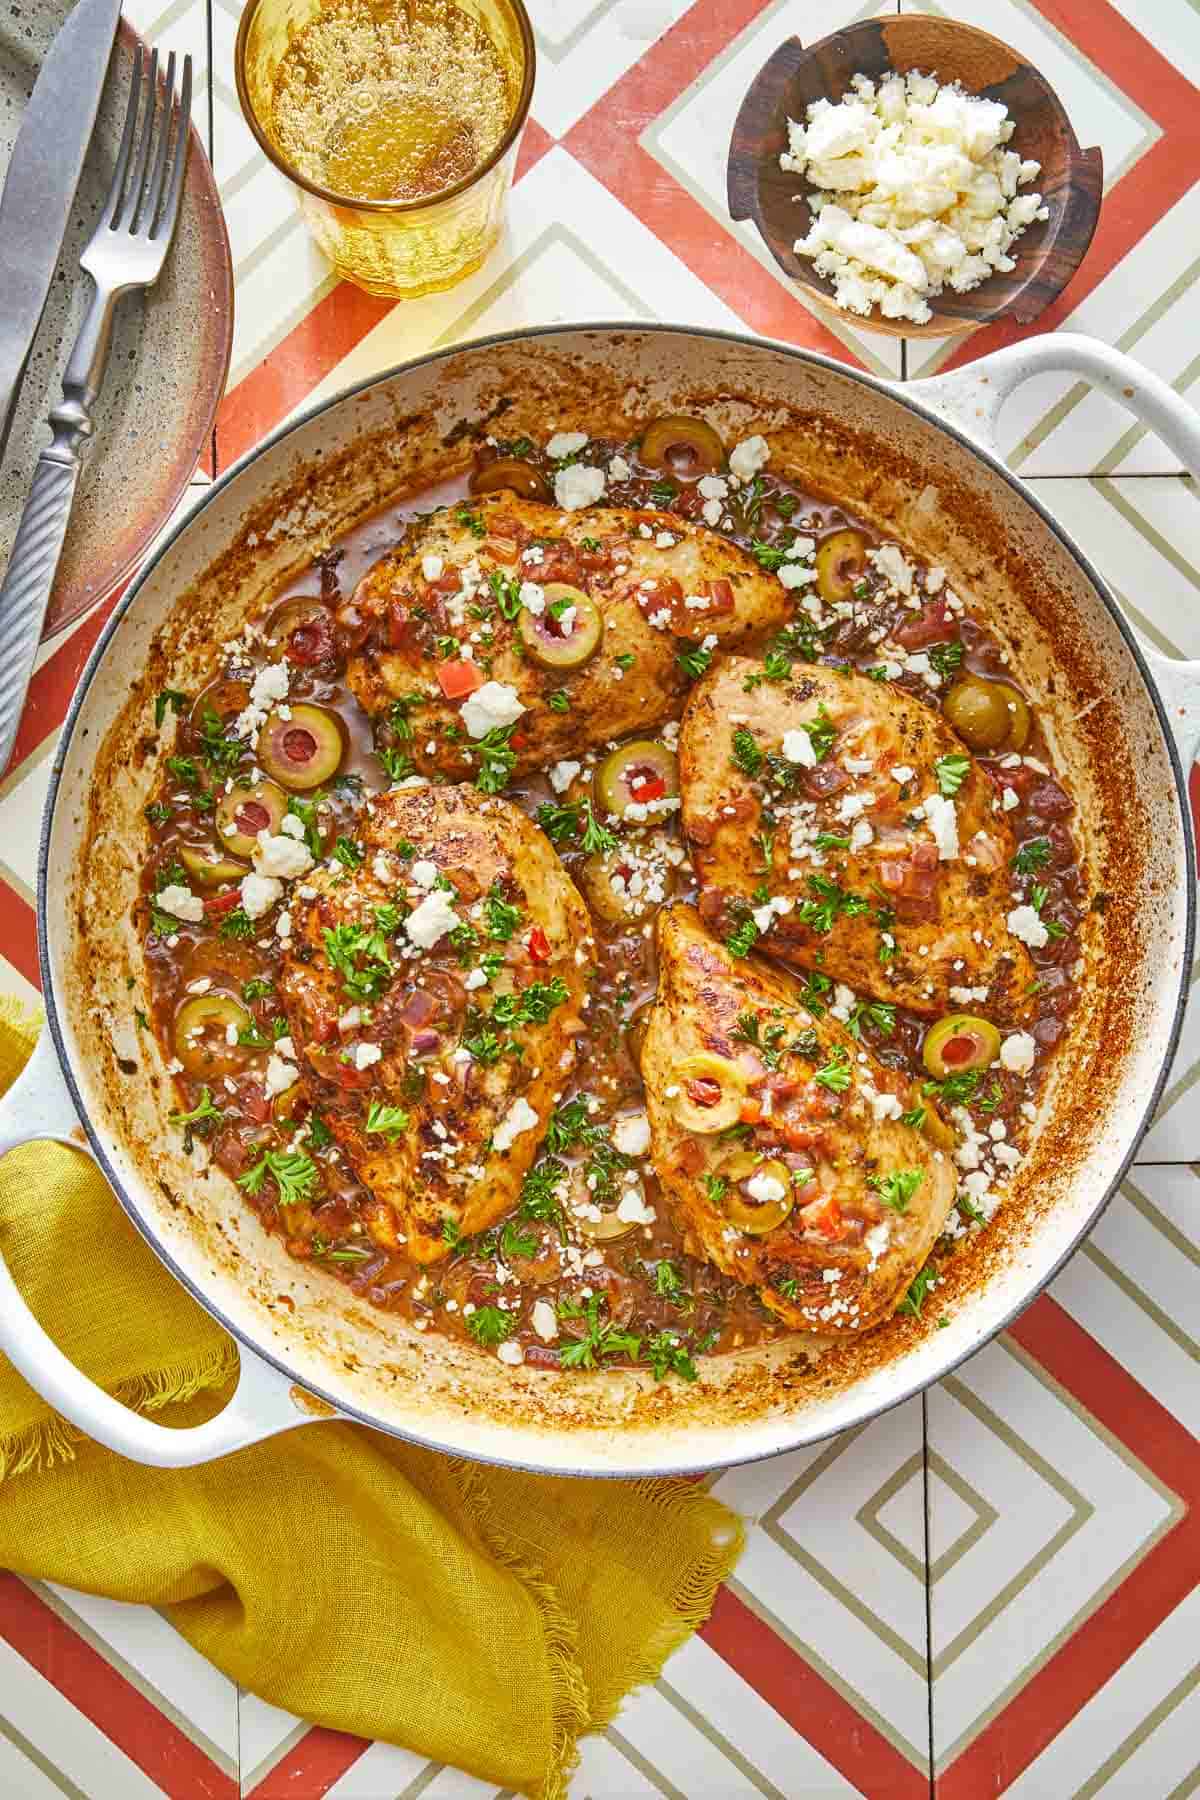 Top 3 Mediterranean Chicken Recipes